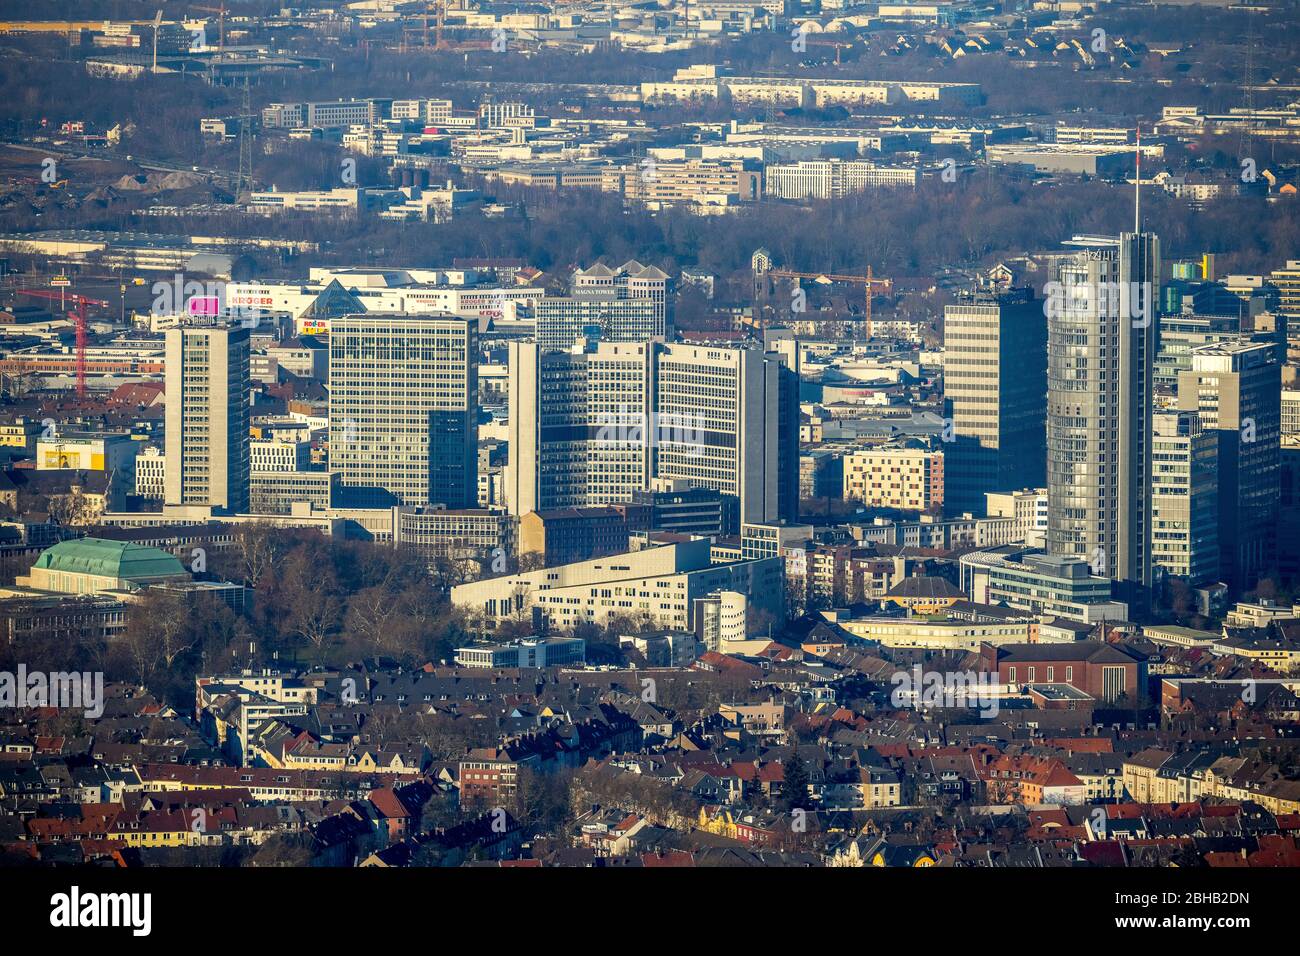 Vue aérienne, Skyline avec la Tour RWE, Aalto Music Theatre et Philharmonic, Essen, Rhénanie-du-Nord-Westphalie, Allemagne Banque D'Images